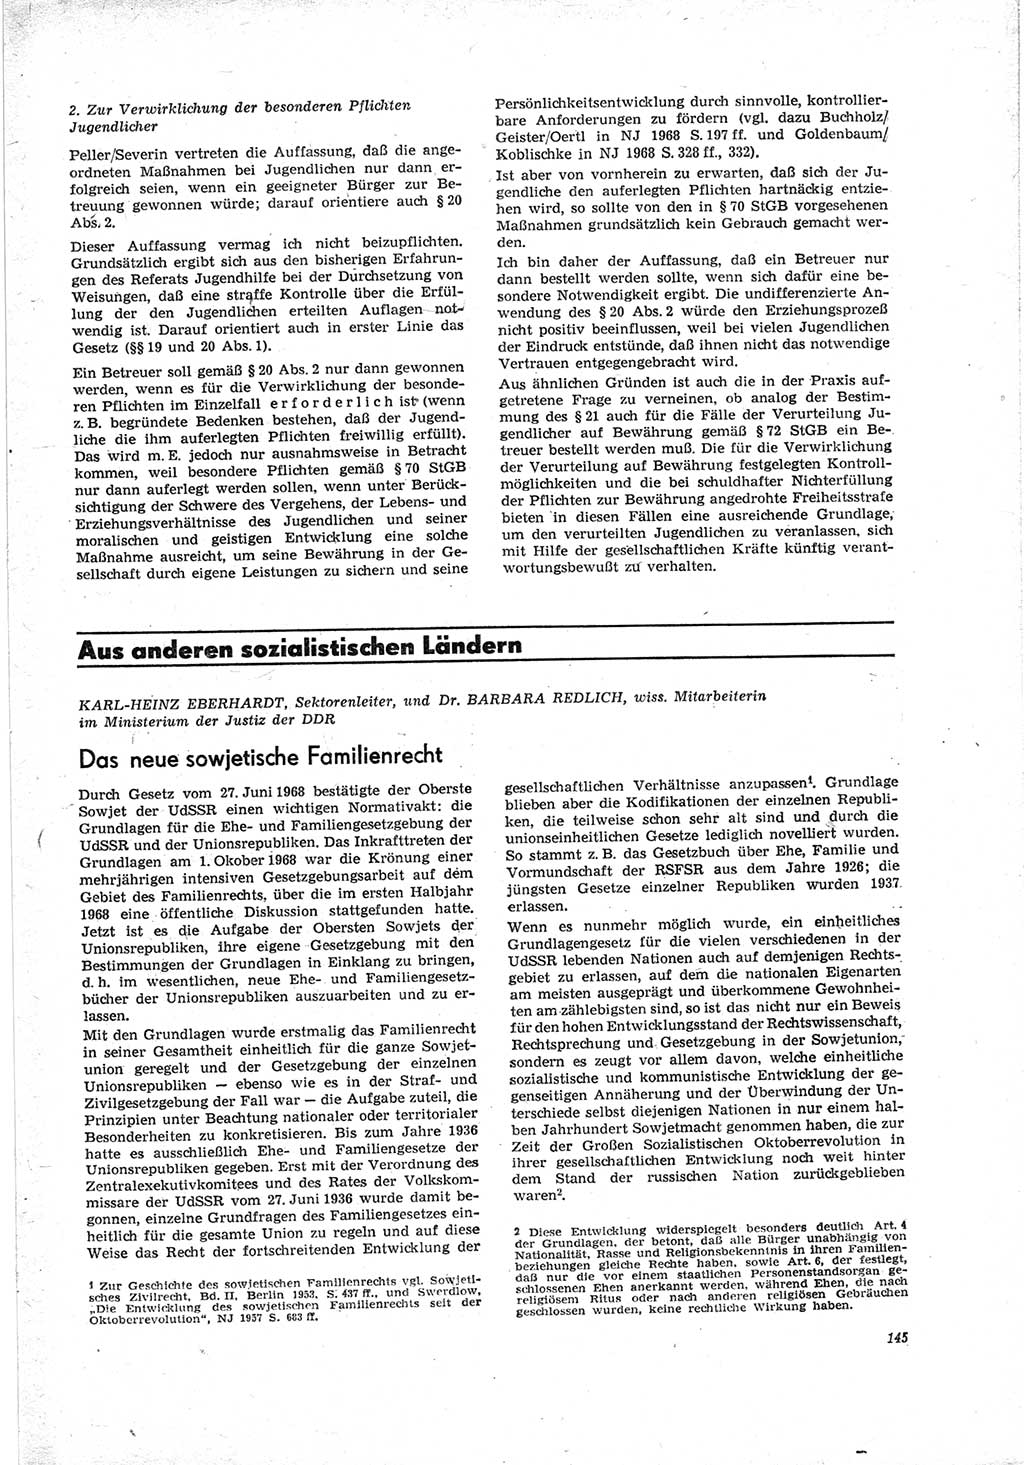 Neue Justiz (NJ), Zeitschrift für Recht und Rechtswissenschaft [Deutsche Demokratische Republik (DDR)], 23. Jahrgang 1969, Seite 145 (NJ DDR 1969, S. 145)